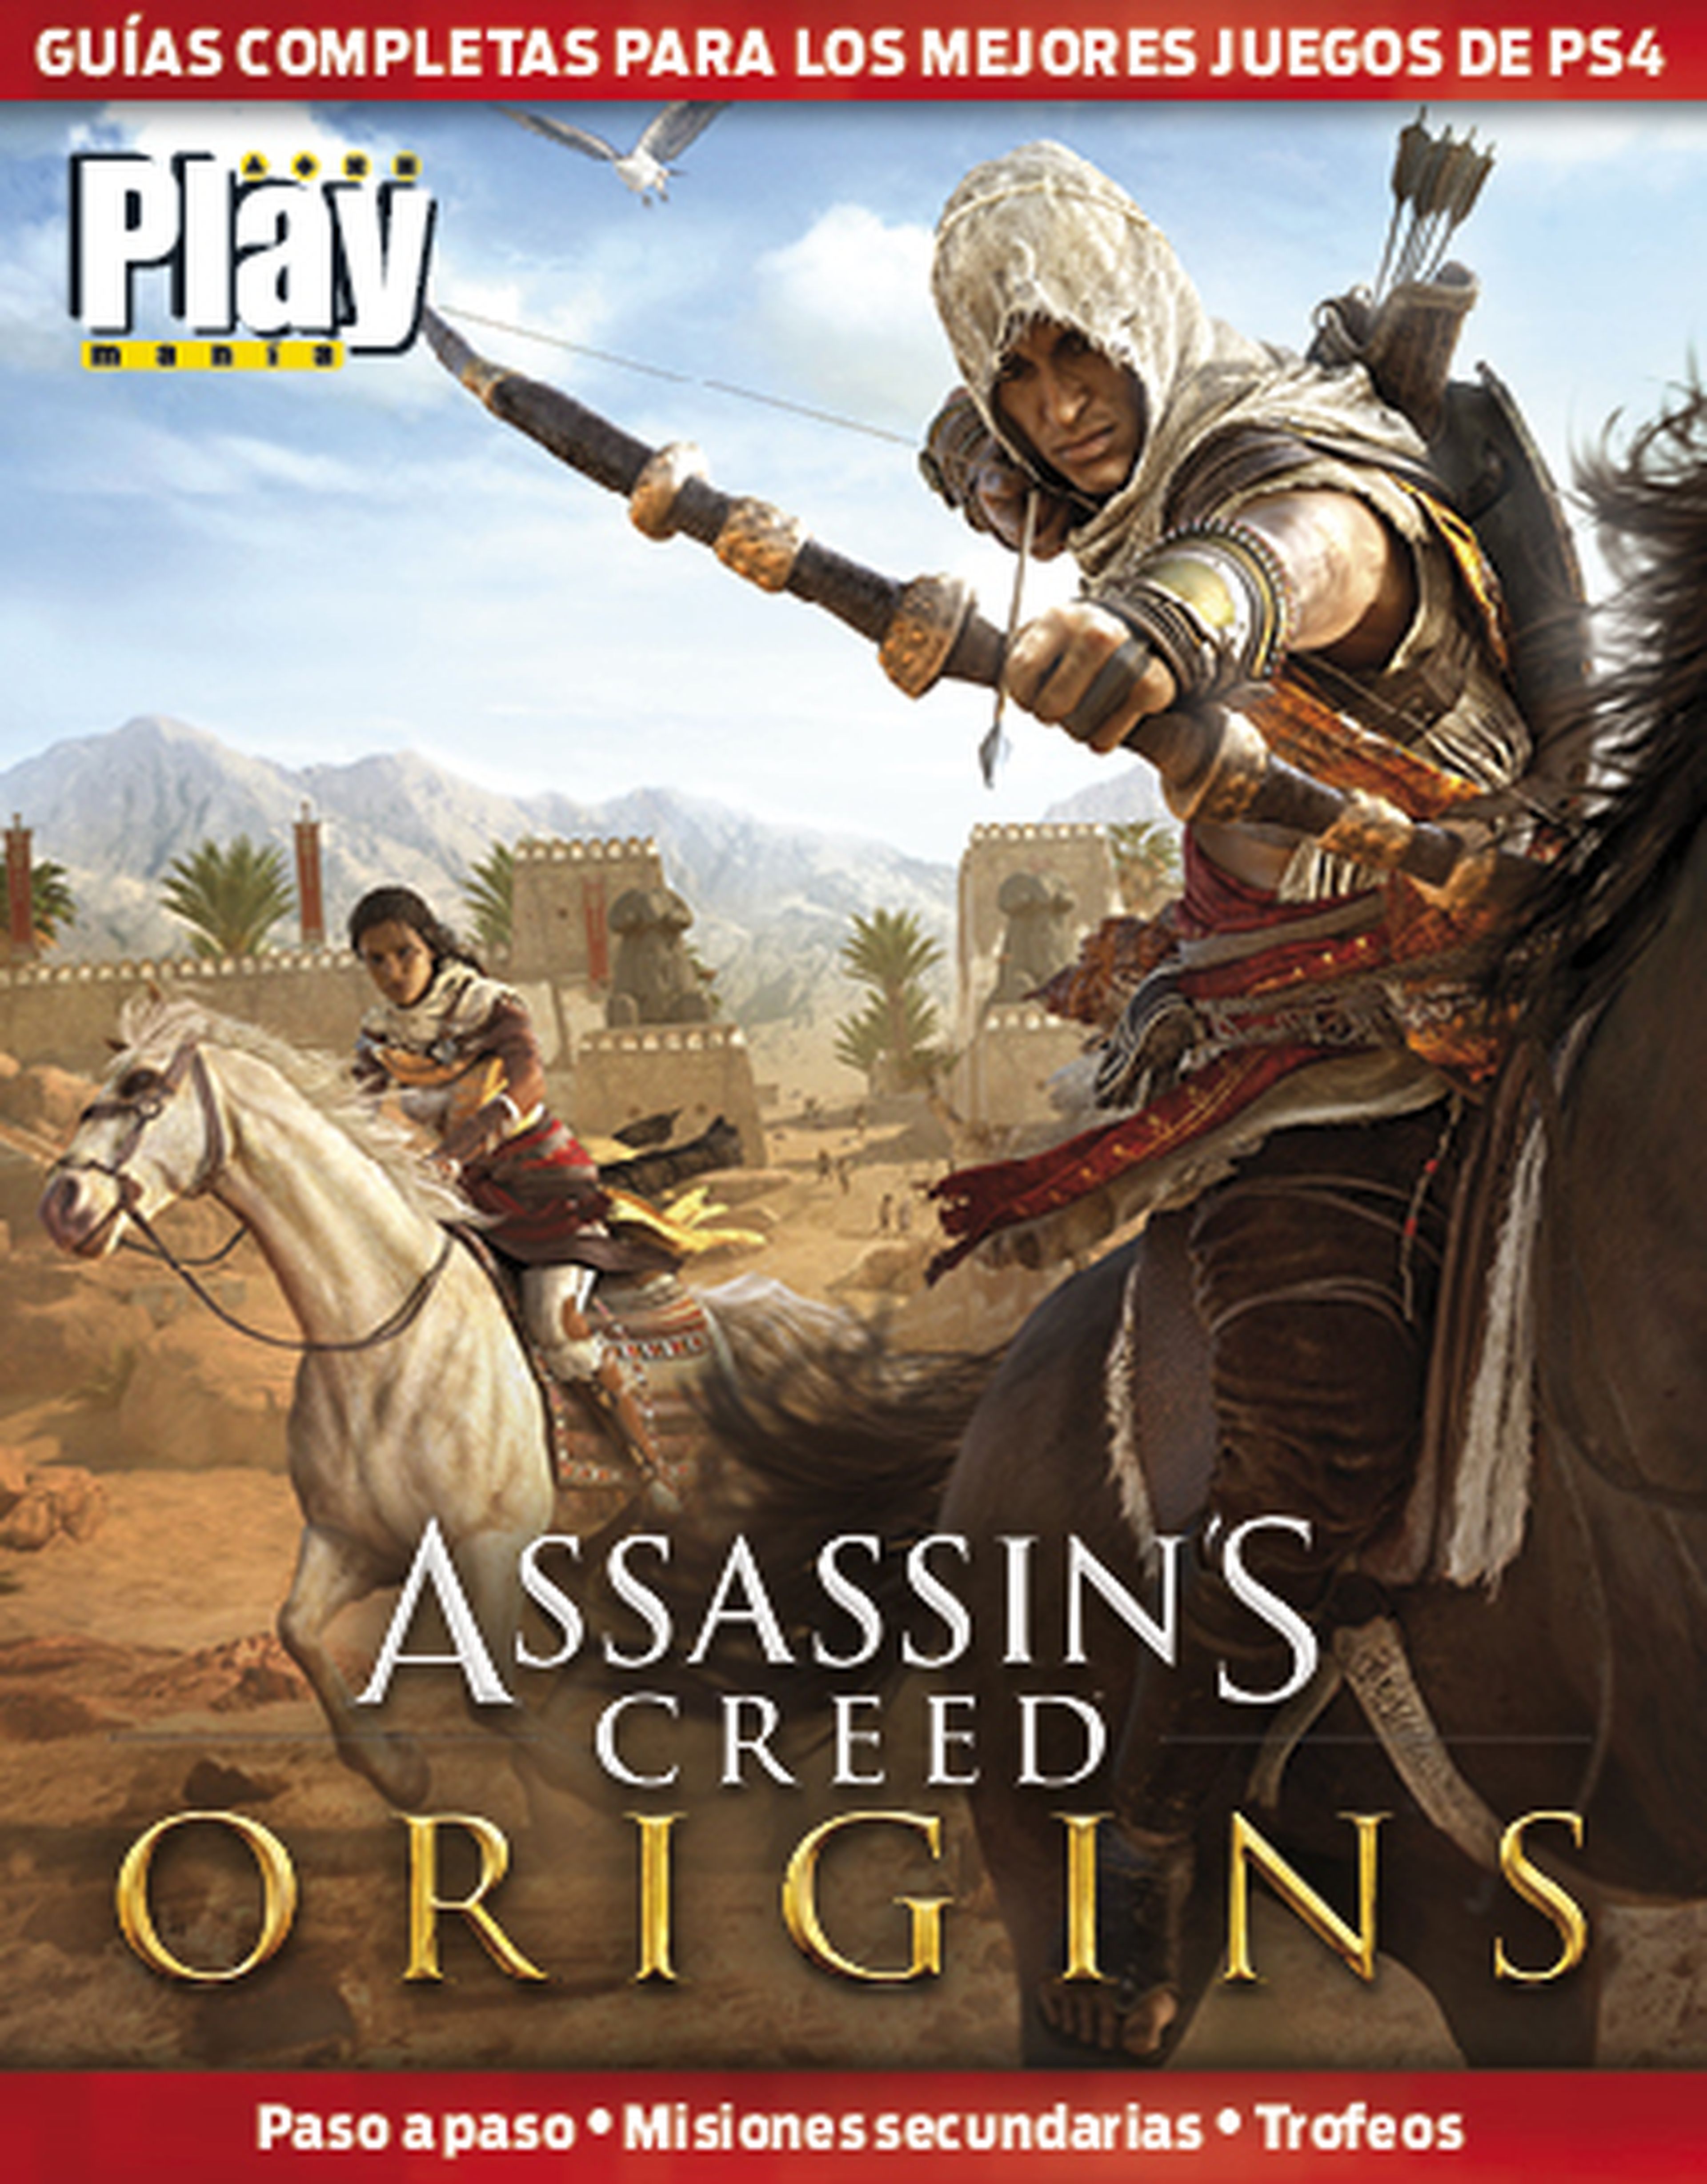 Guia de Assassin Creed Origins en Playmania 229